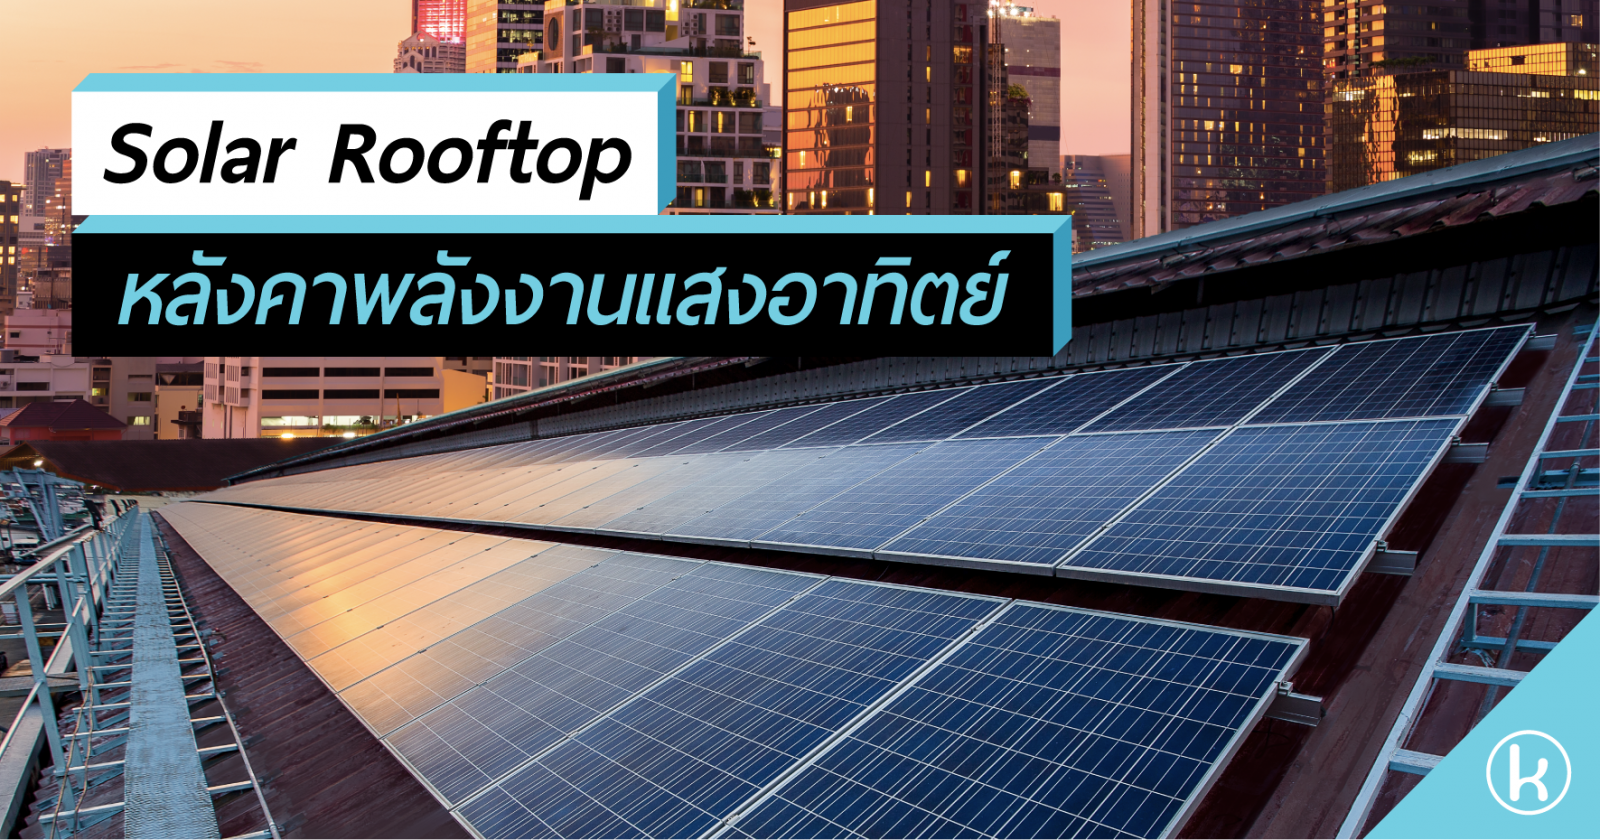 Solar Rooftop หลังคาพลังงานแสงอาทิตย์